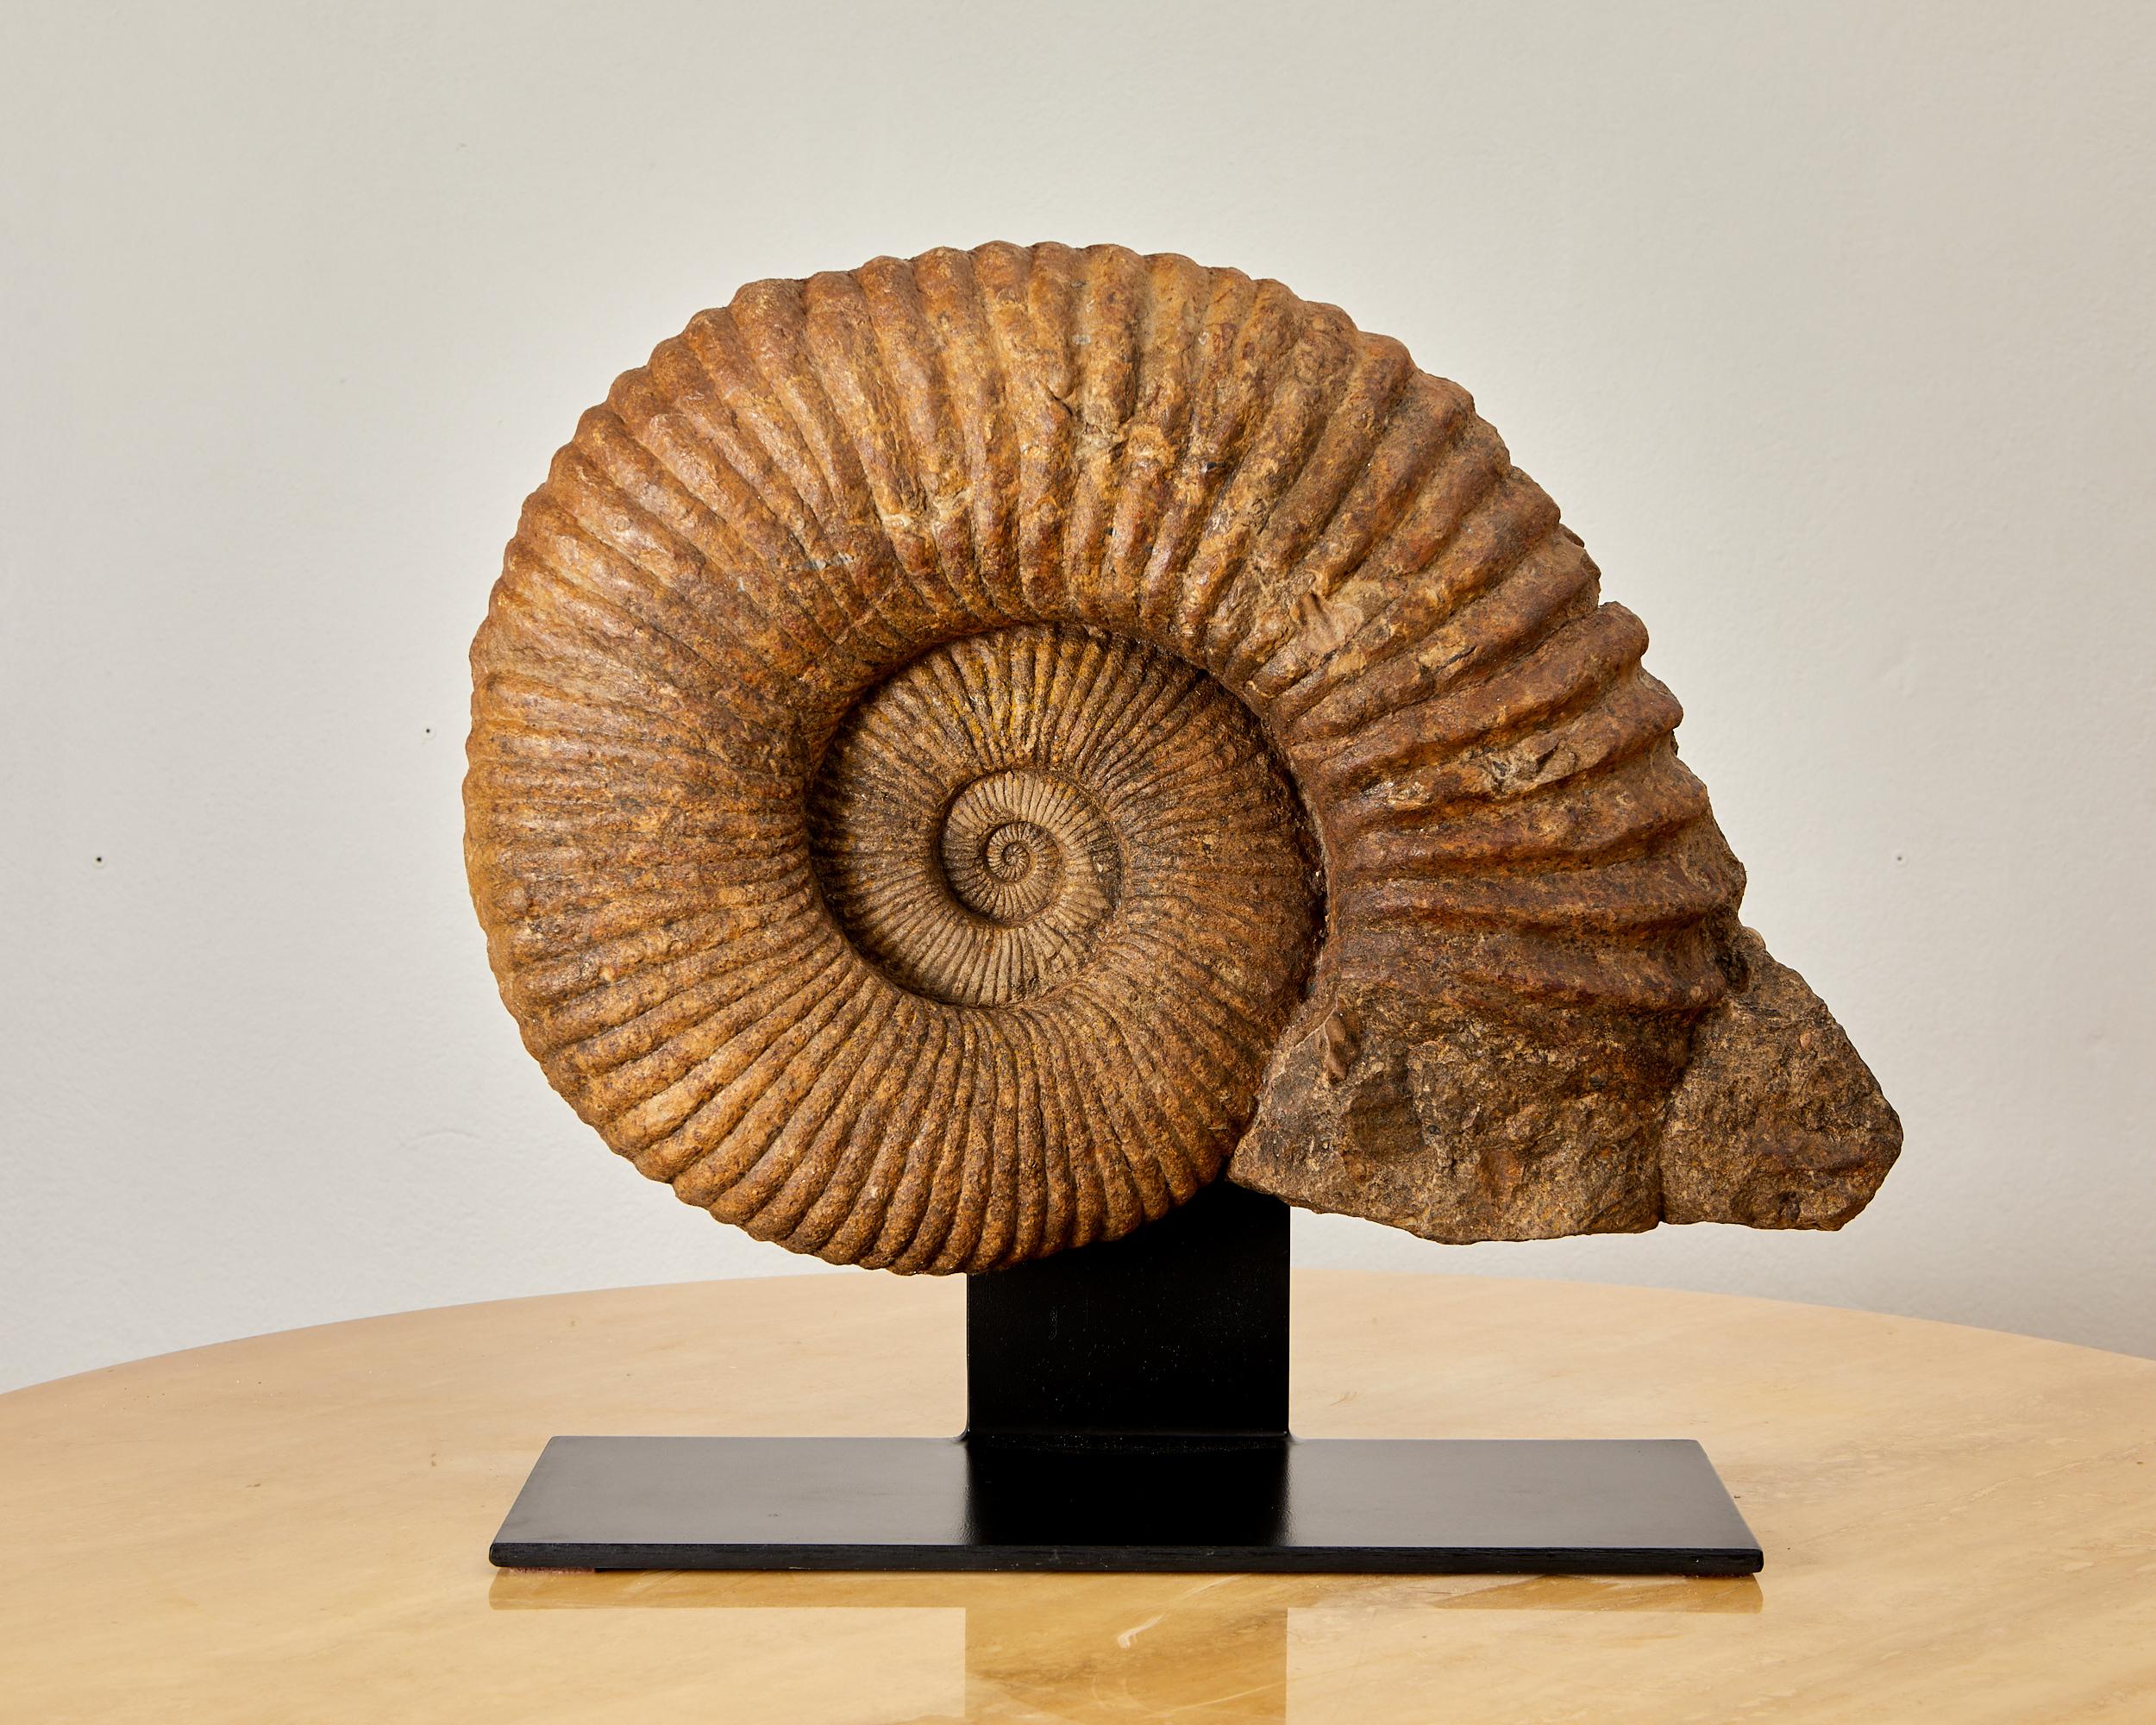 Magnifique fossile,
ammonite, France, Préhistoire,
environ 335 millions d'années d'existence.
Hauteur 55 cm, largeur 58 cm.